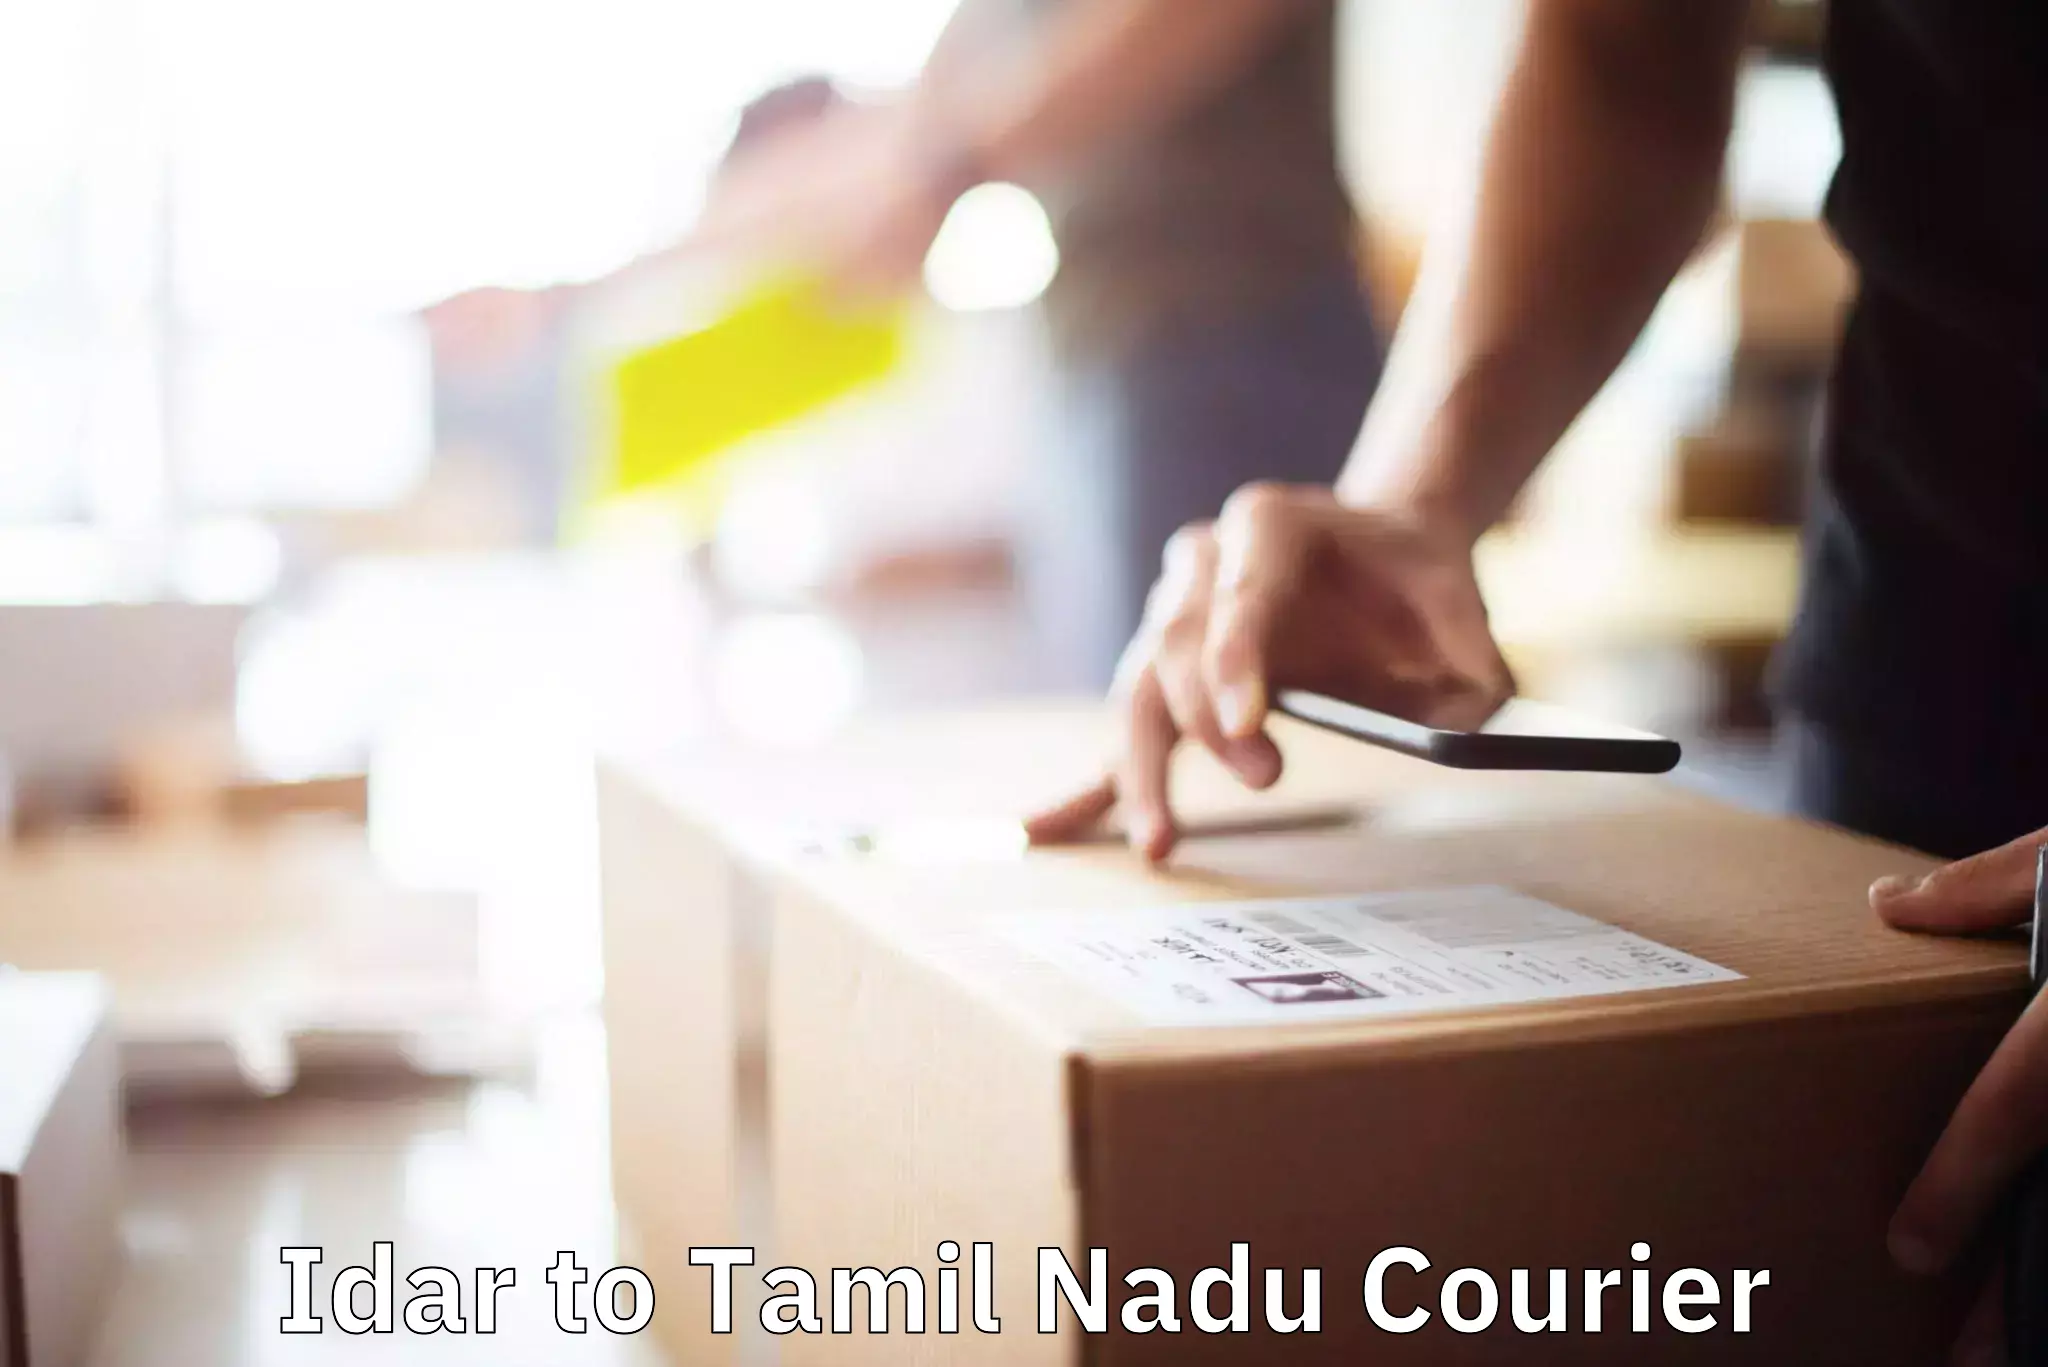 Furniture transport specialists Idar to Tamil Nadu